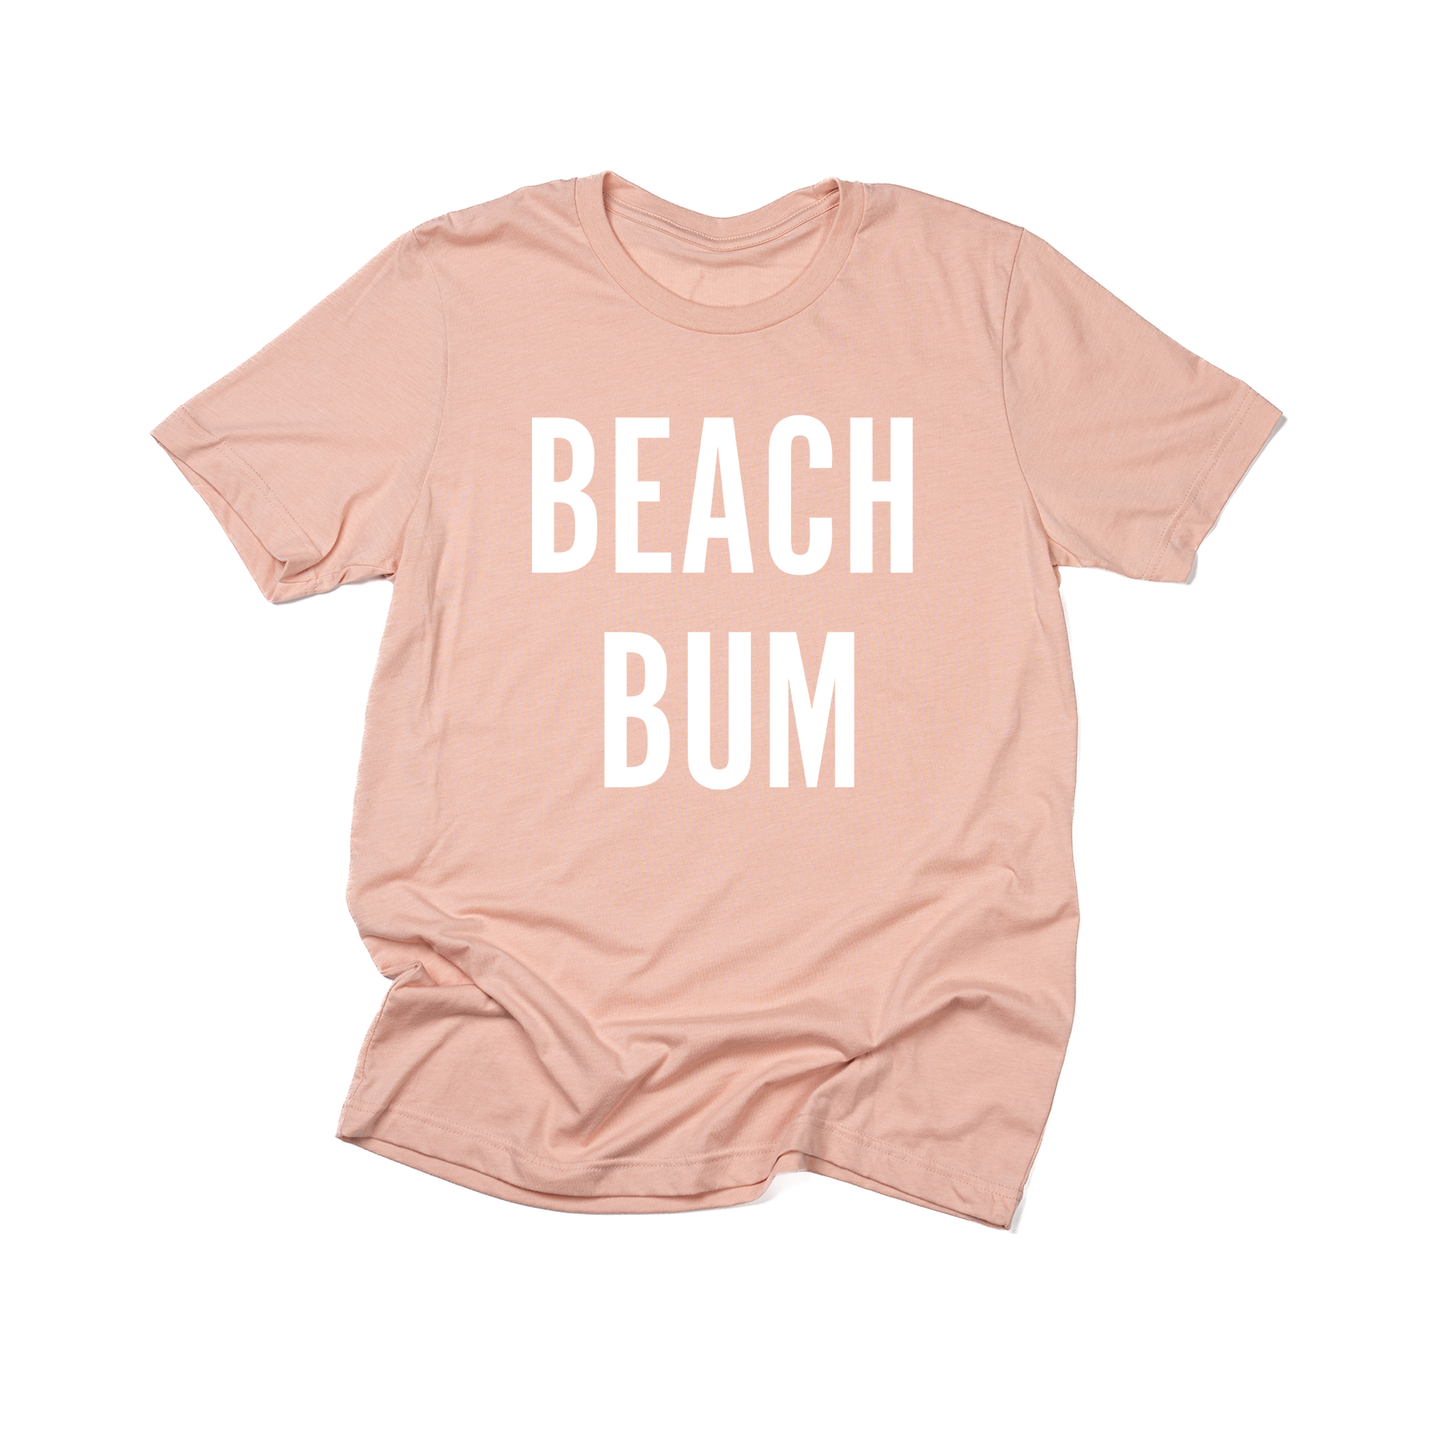 BEACH BUM (White) - Tee (Peach)